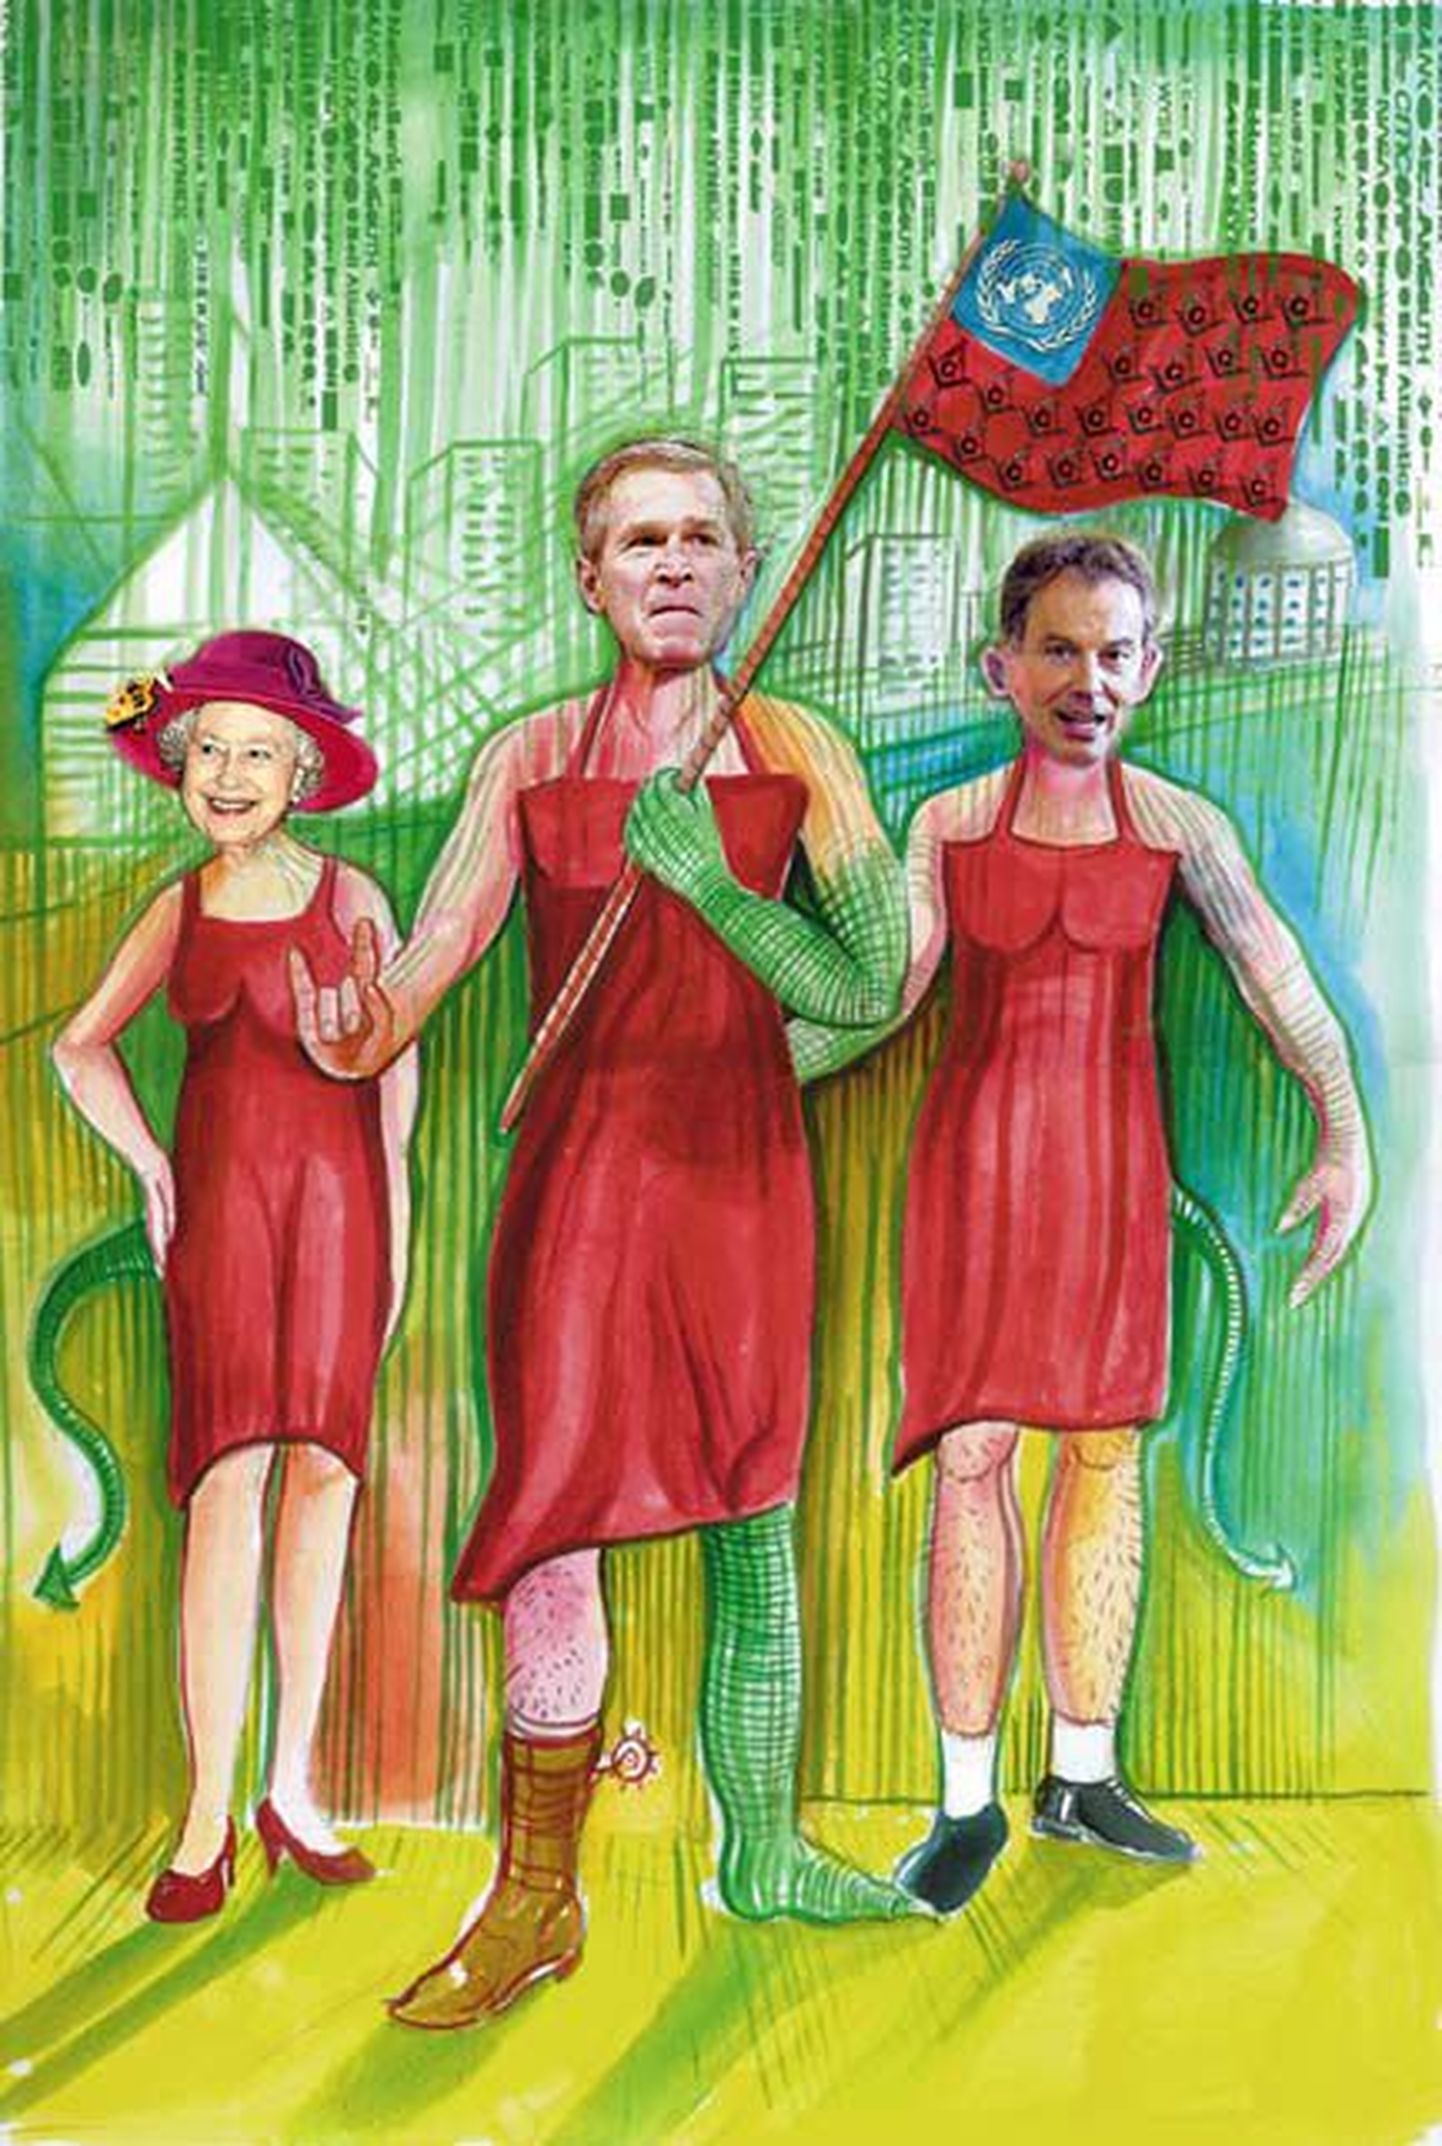 Иллюстрация к книге Дэвида Айка: рептилоиды под видом Елизаветы II, Джорджа Буша-мл. и Тони Блэра манипулируют человечеством.